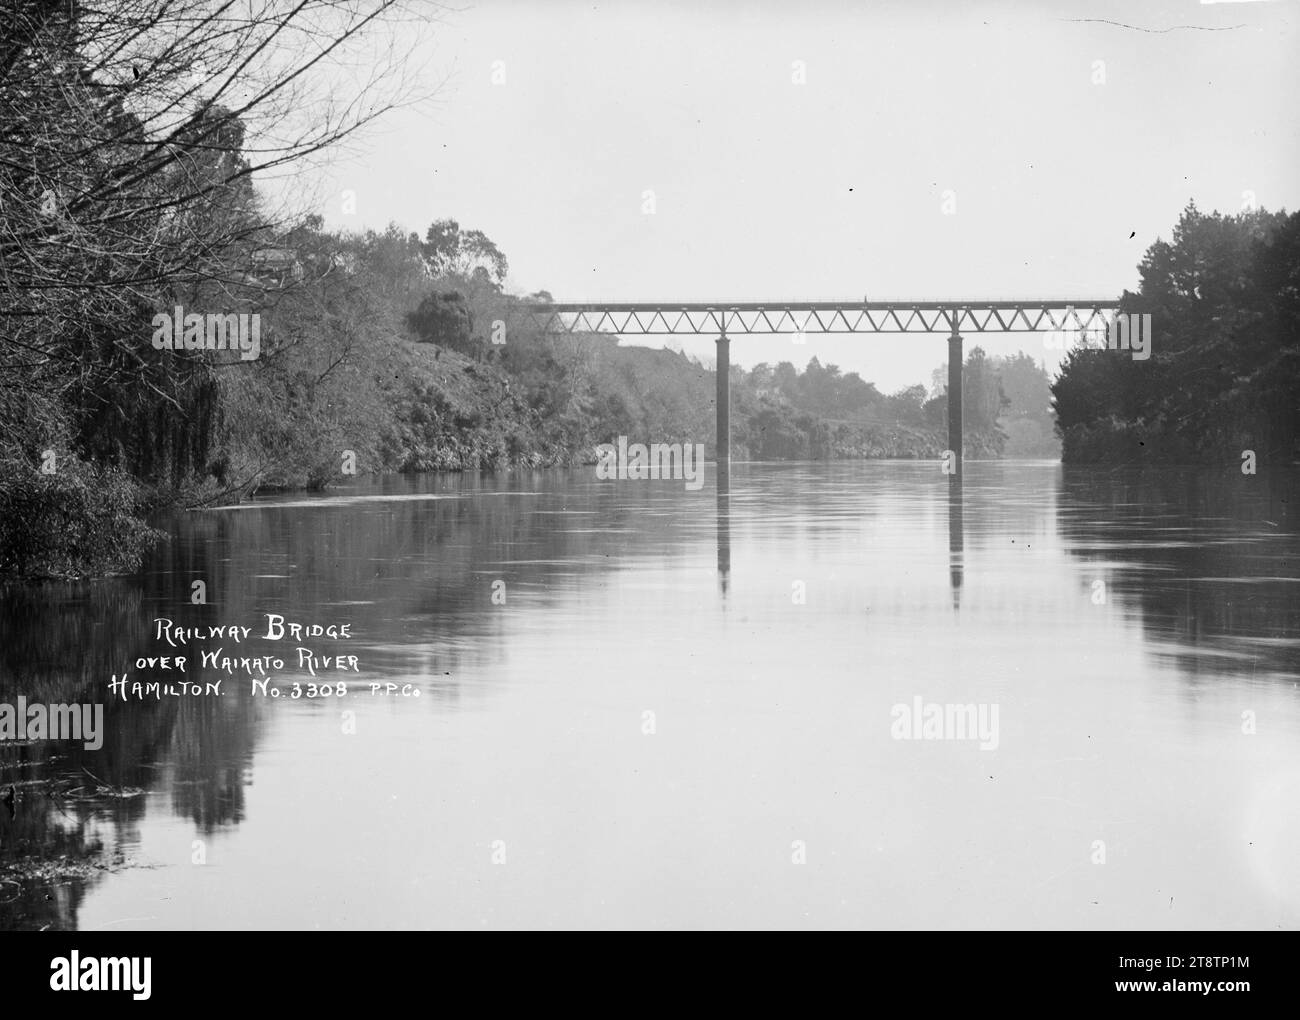 Eisenbahnbrücke über den Waikato River bei Hamilton, ca. 1910er Jahre, Blick auf die Eisenbahnbrücke über den Waikato River bei Hamilton. Fotografiert von Price Photo Co, Firma von William Archer Price Stockfoto